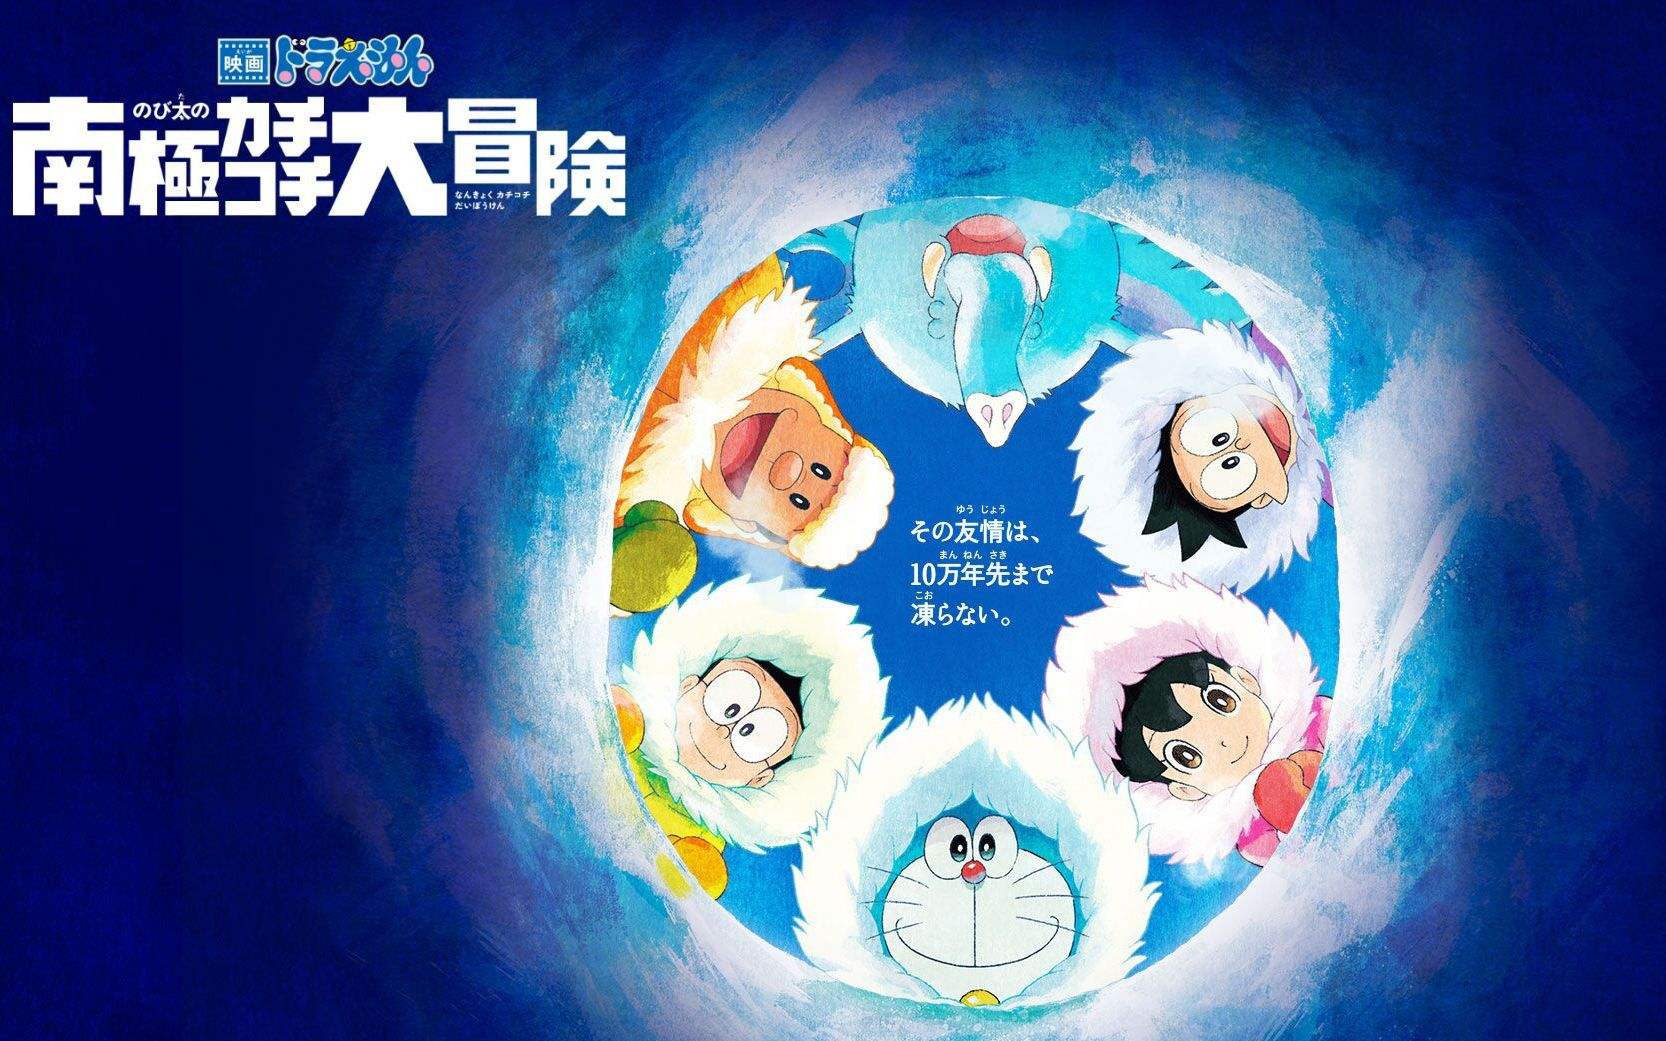 「僕の心をつくってよ」《哆啦A梦：大雄的南极冰寒大冒险 》主题曲 在线赏析下载